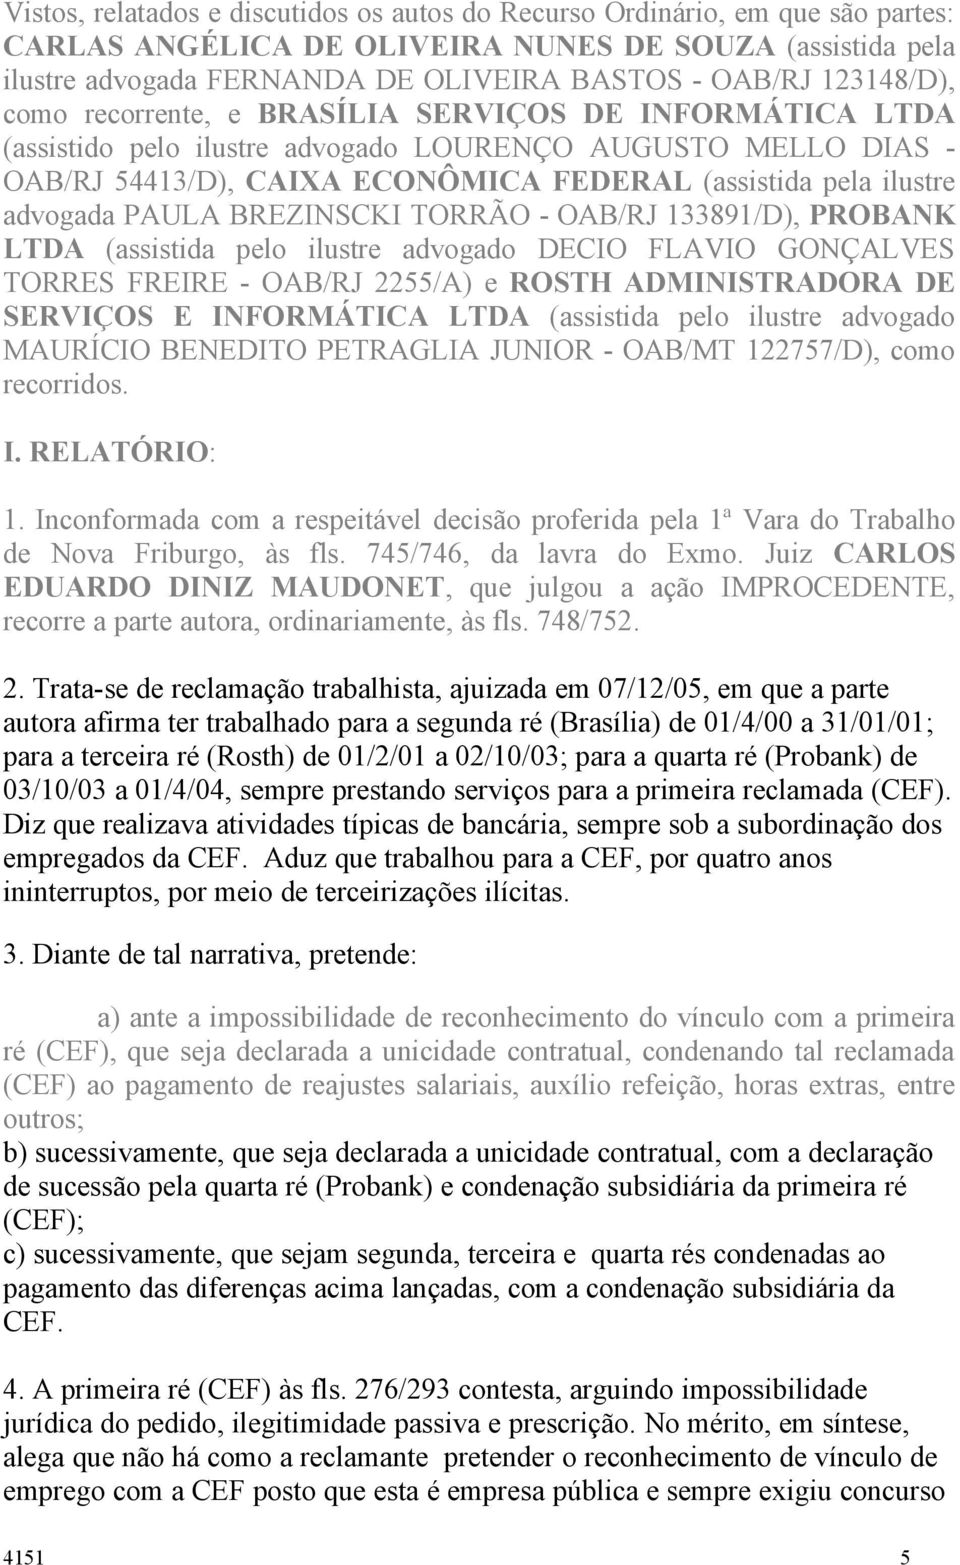 advogada PAULA BREZINSCKI TORRÃO - OAB/RJ 133891/D), PROBANK LTDA (assistida pelo ilustre advogado DECIO FLAVIO GONÇALVES TORRES FREIRE - OAB/RJ 2255/A) e ROSTH ADMINISTRADORA DE SERVIÇOS E